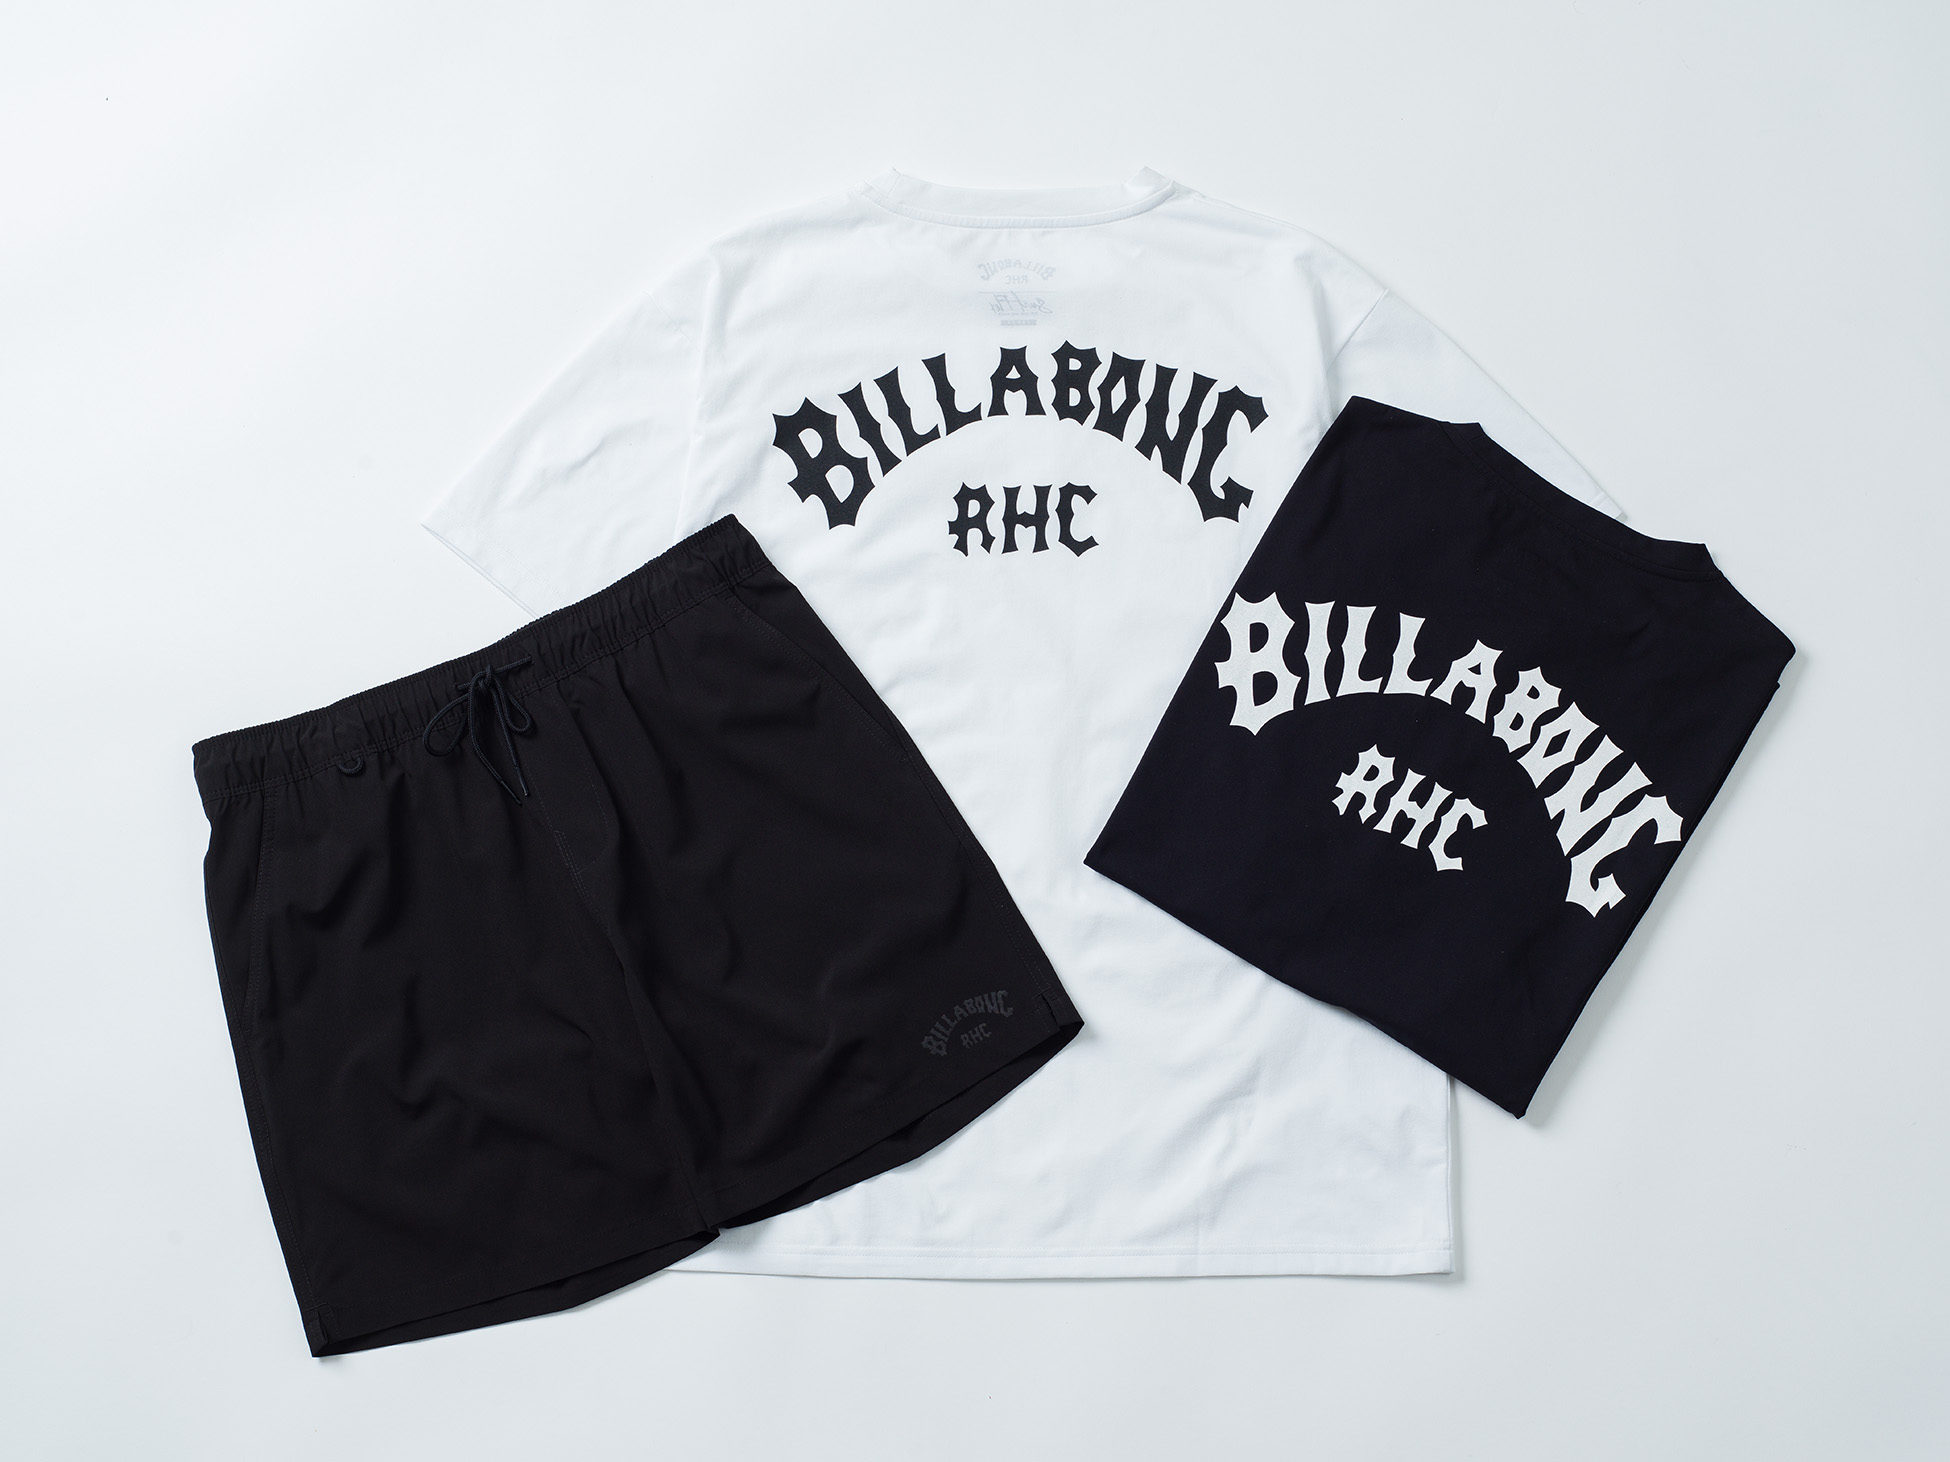 シャツ Ron Herman - Billabong コラボRHC Tシャツの通販 by テック's